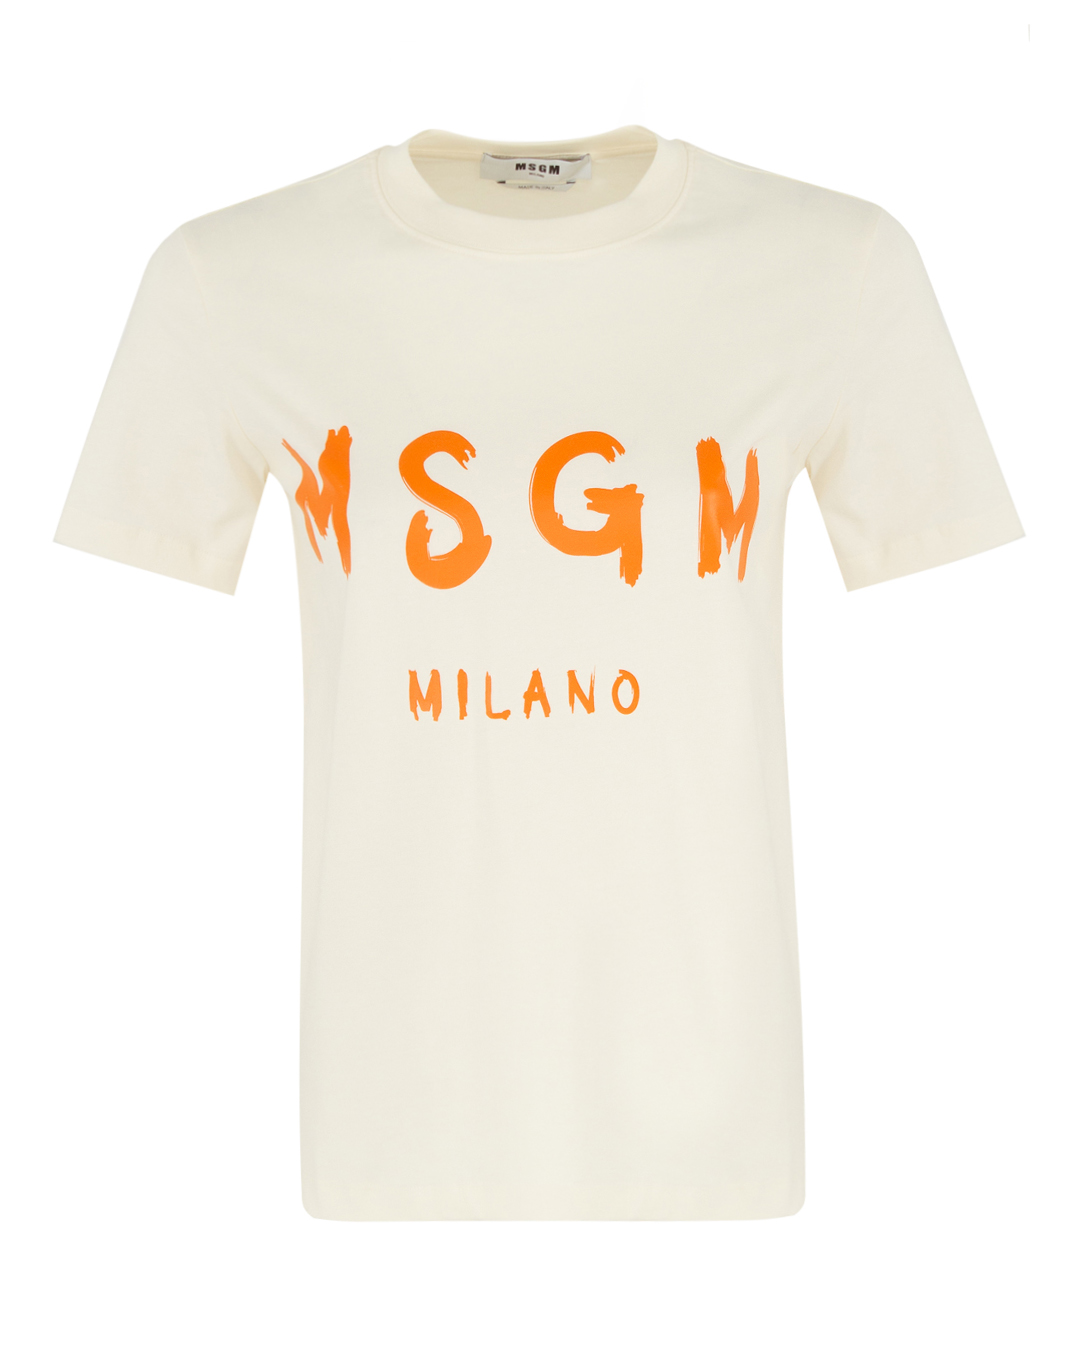 хлопковая футболка MSGM костюм футболка и брюки детский jump рост 104 110 см бежевый хаки